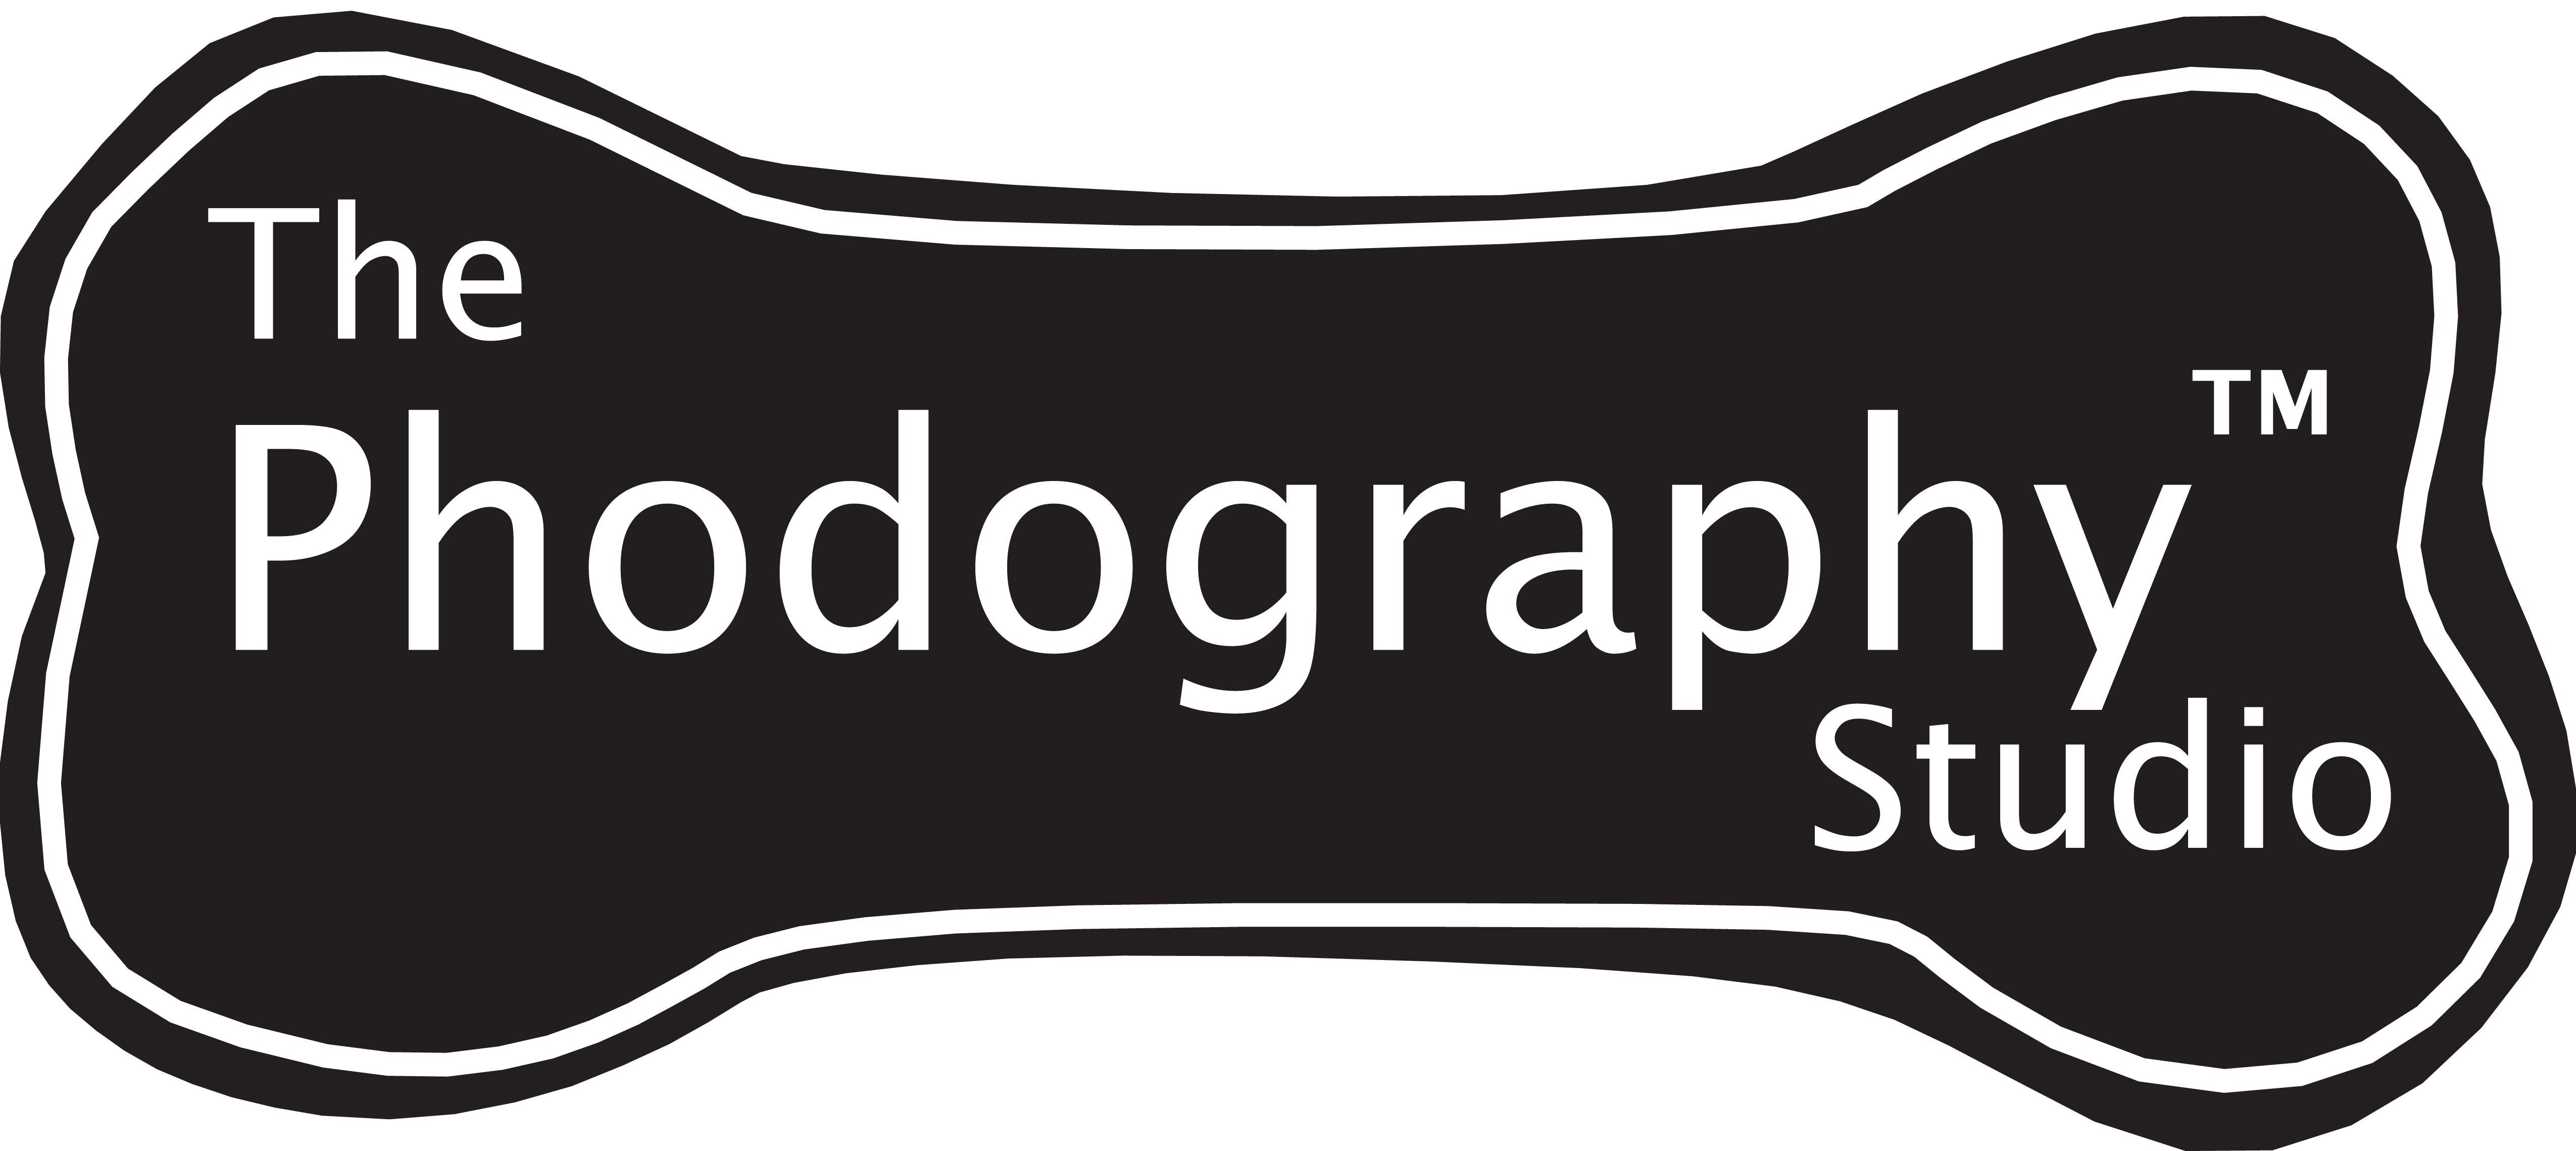 The Phodography Studio